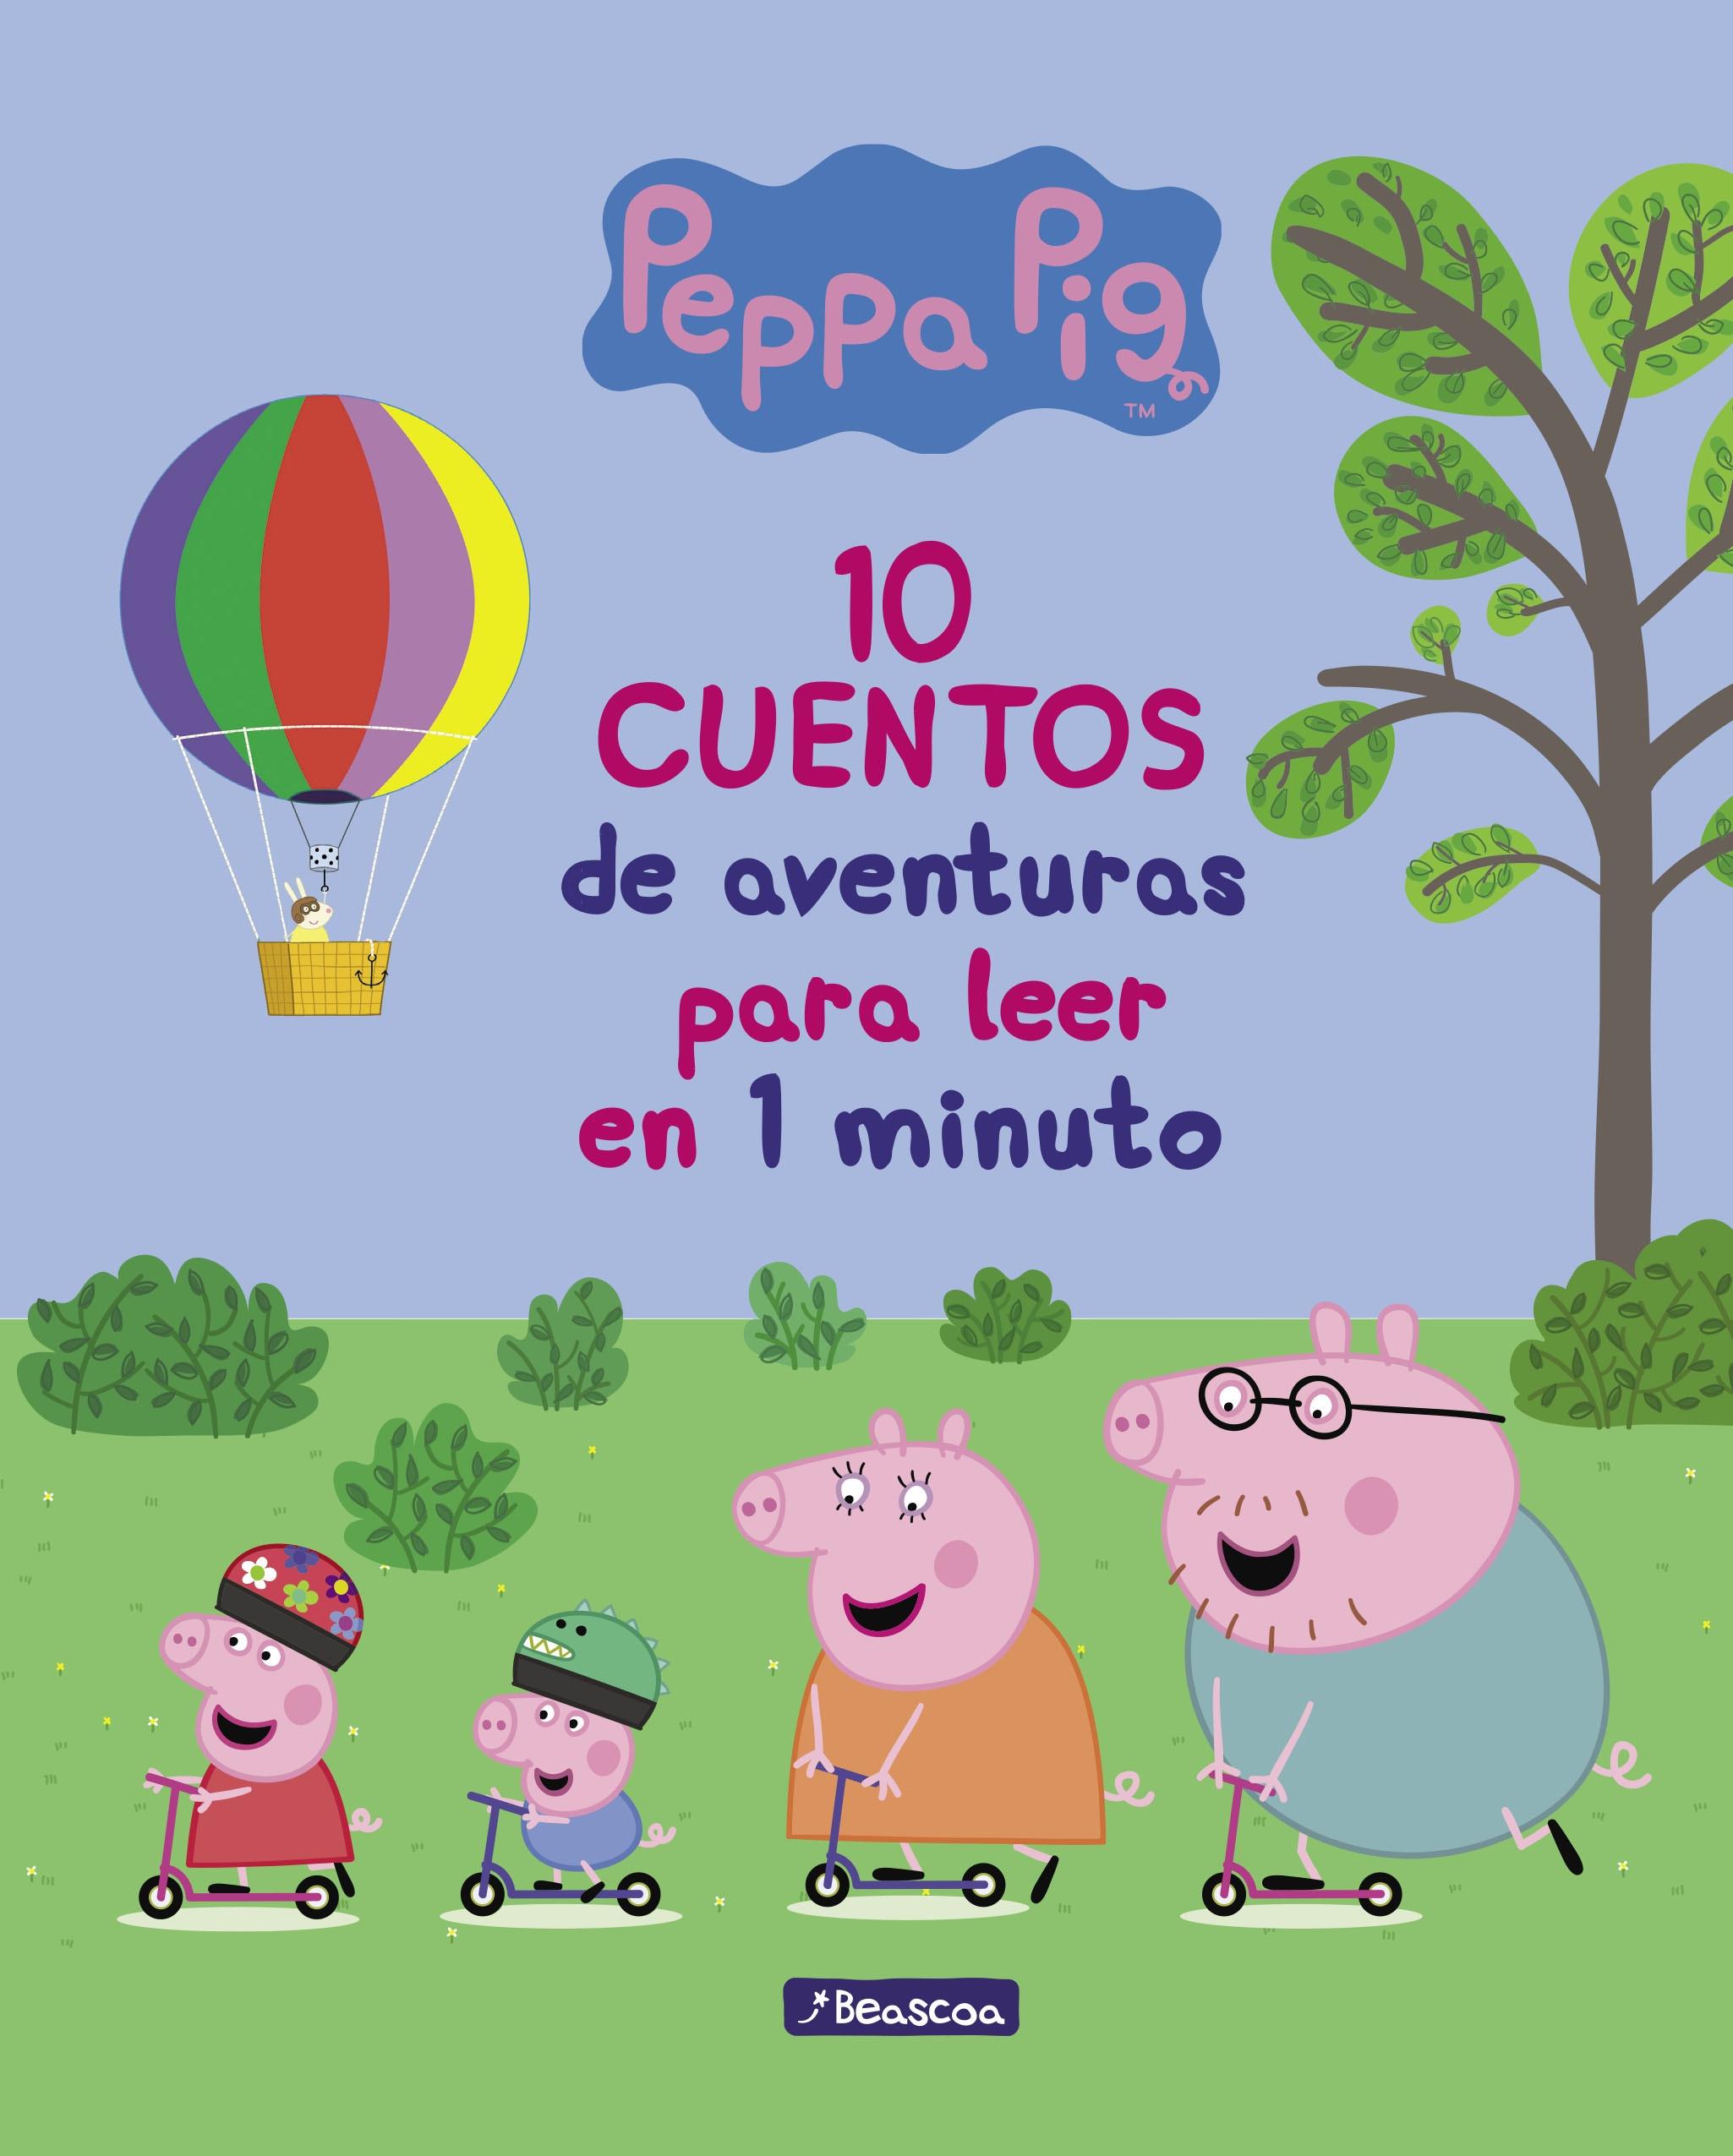 10 cuentos de aventuras para leer en 1 minuto "(Un cuento de Peppa Pig)"